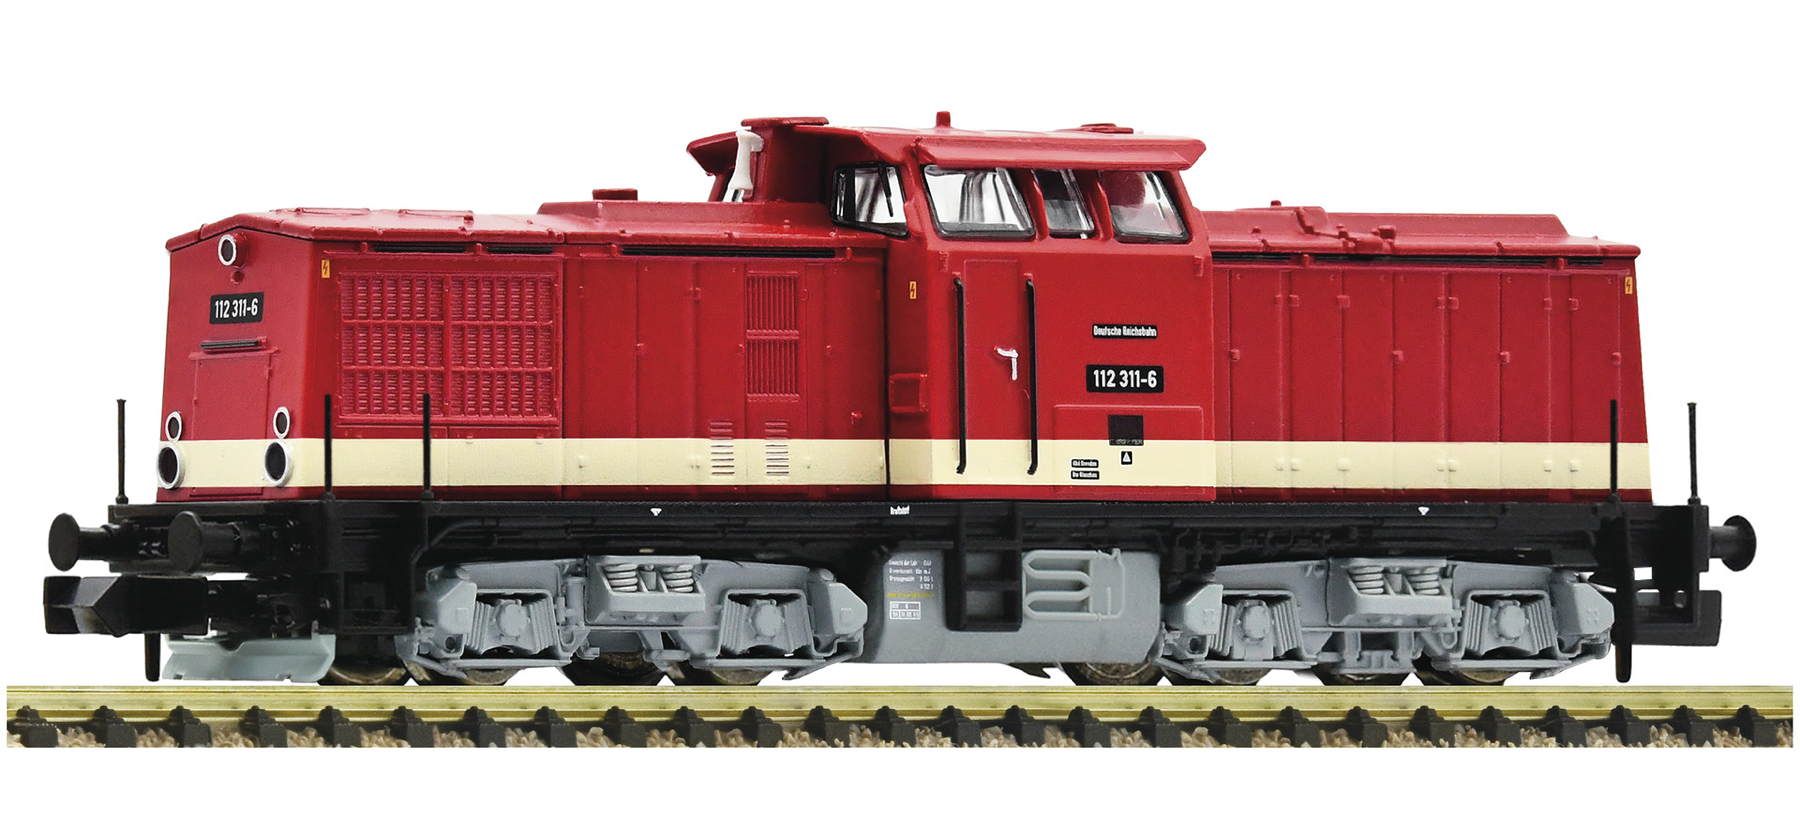 Diesellokomotive 112 311-6, DR - Bild 1